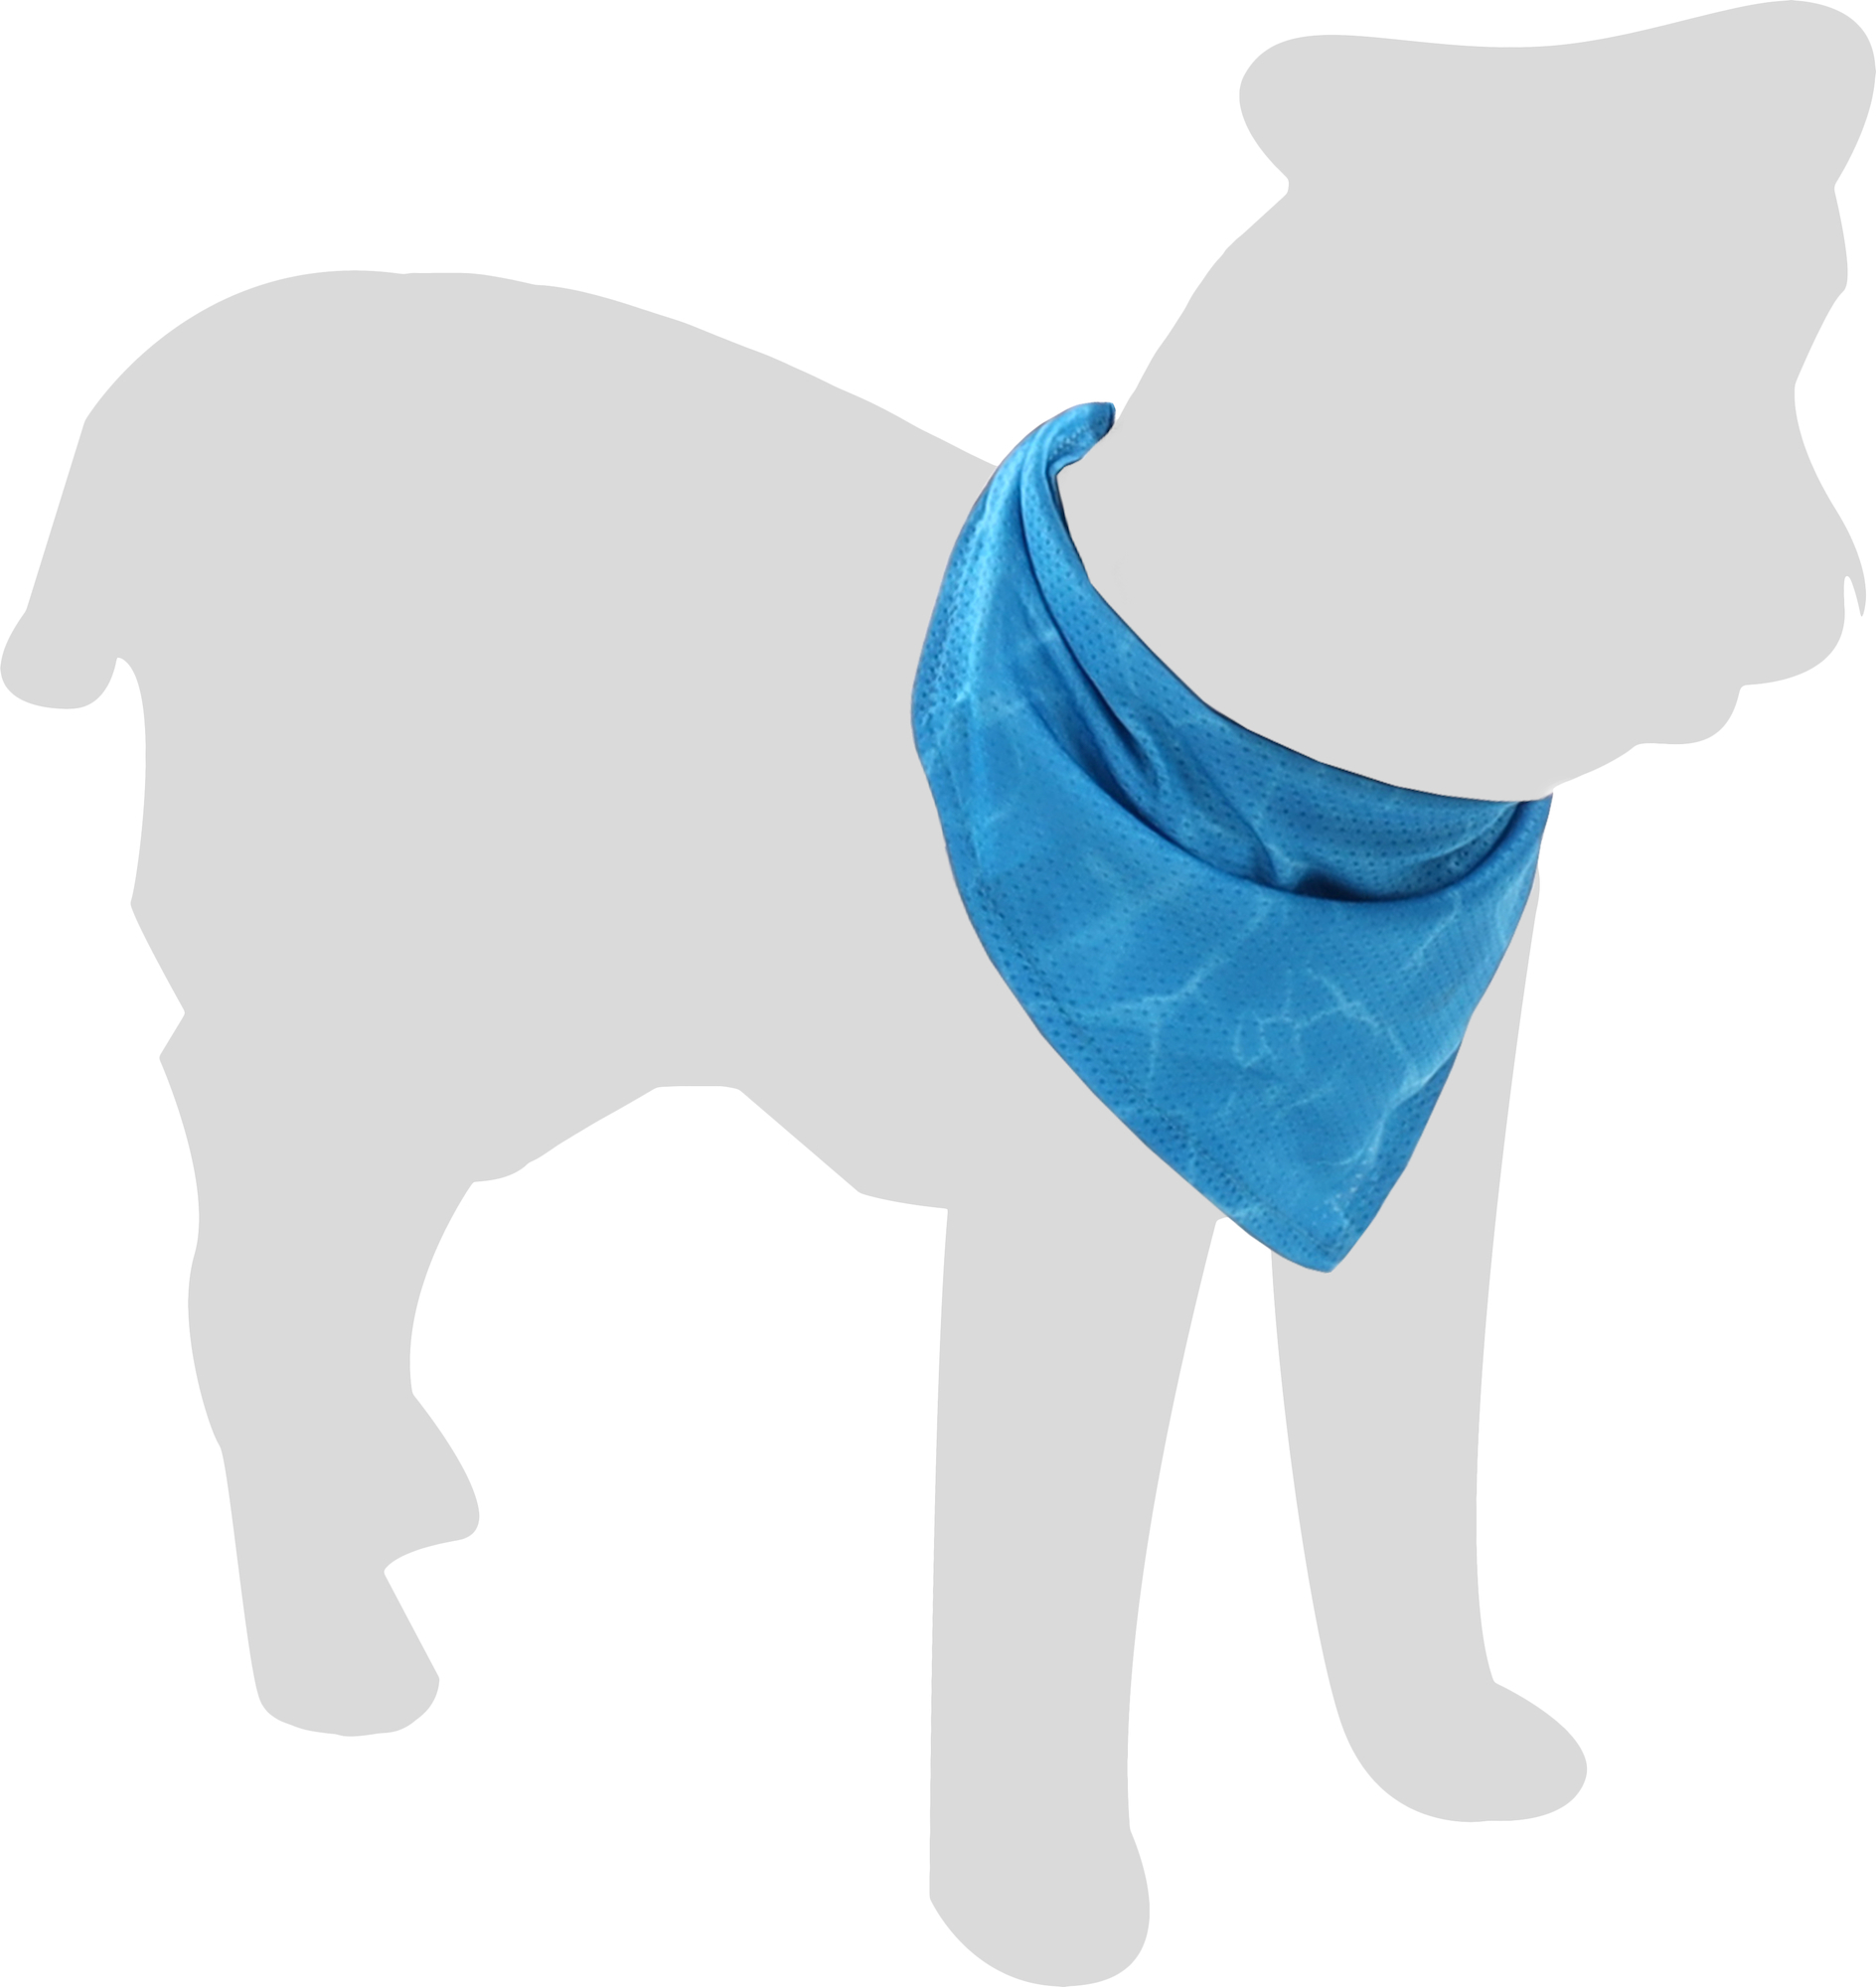 Deze koelbandana is perfect voor jouw hond op warme dagen! Gemaakt van ademend polyester en waterabsorberend. Gewoon nat maken voor gebruik en je hond blijft lekker koel